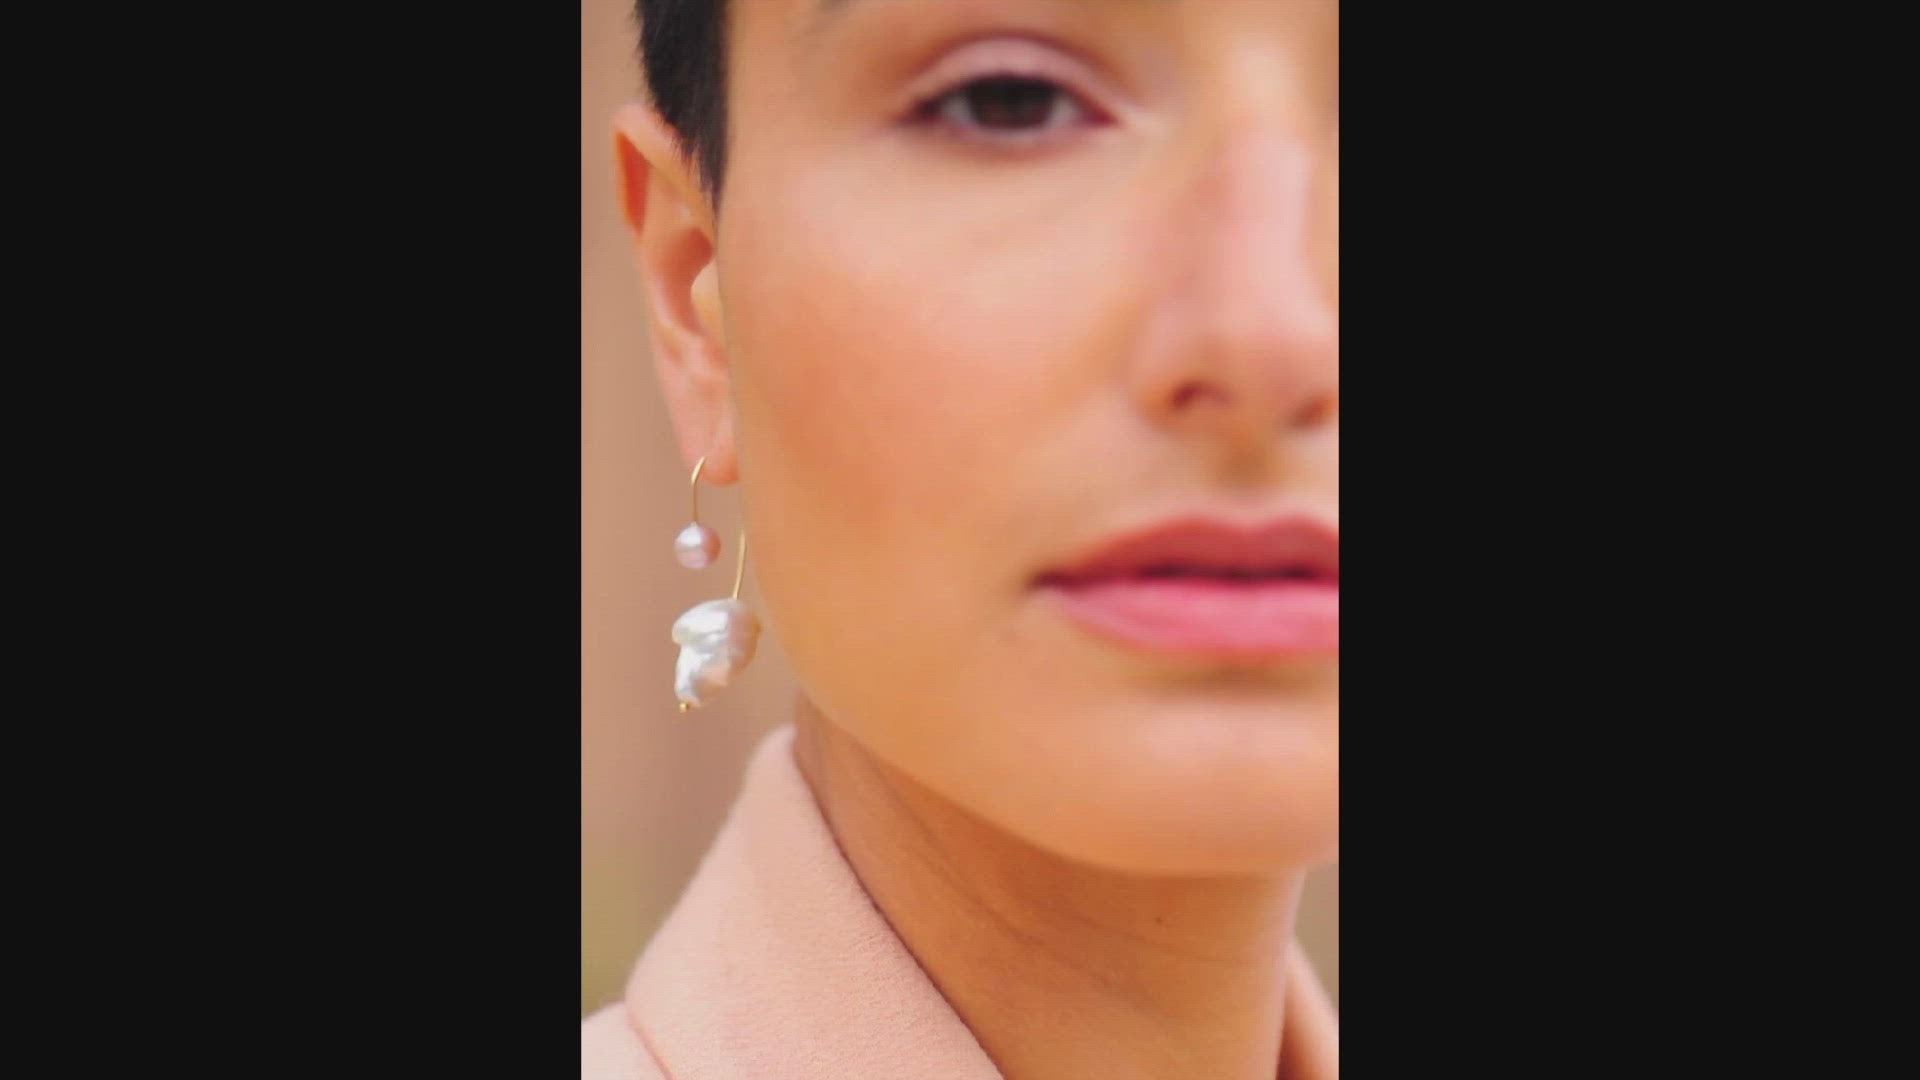 Pearl Empress Earrings